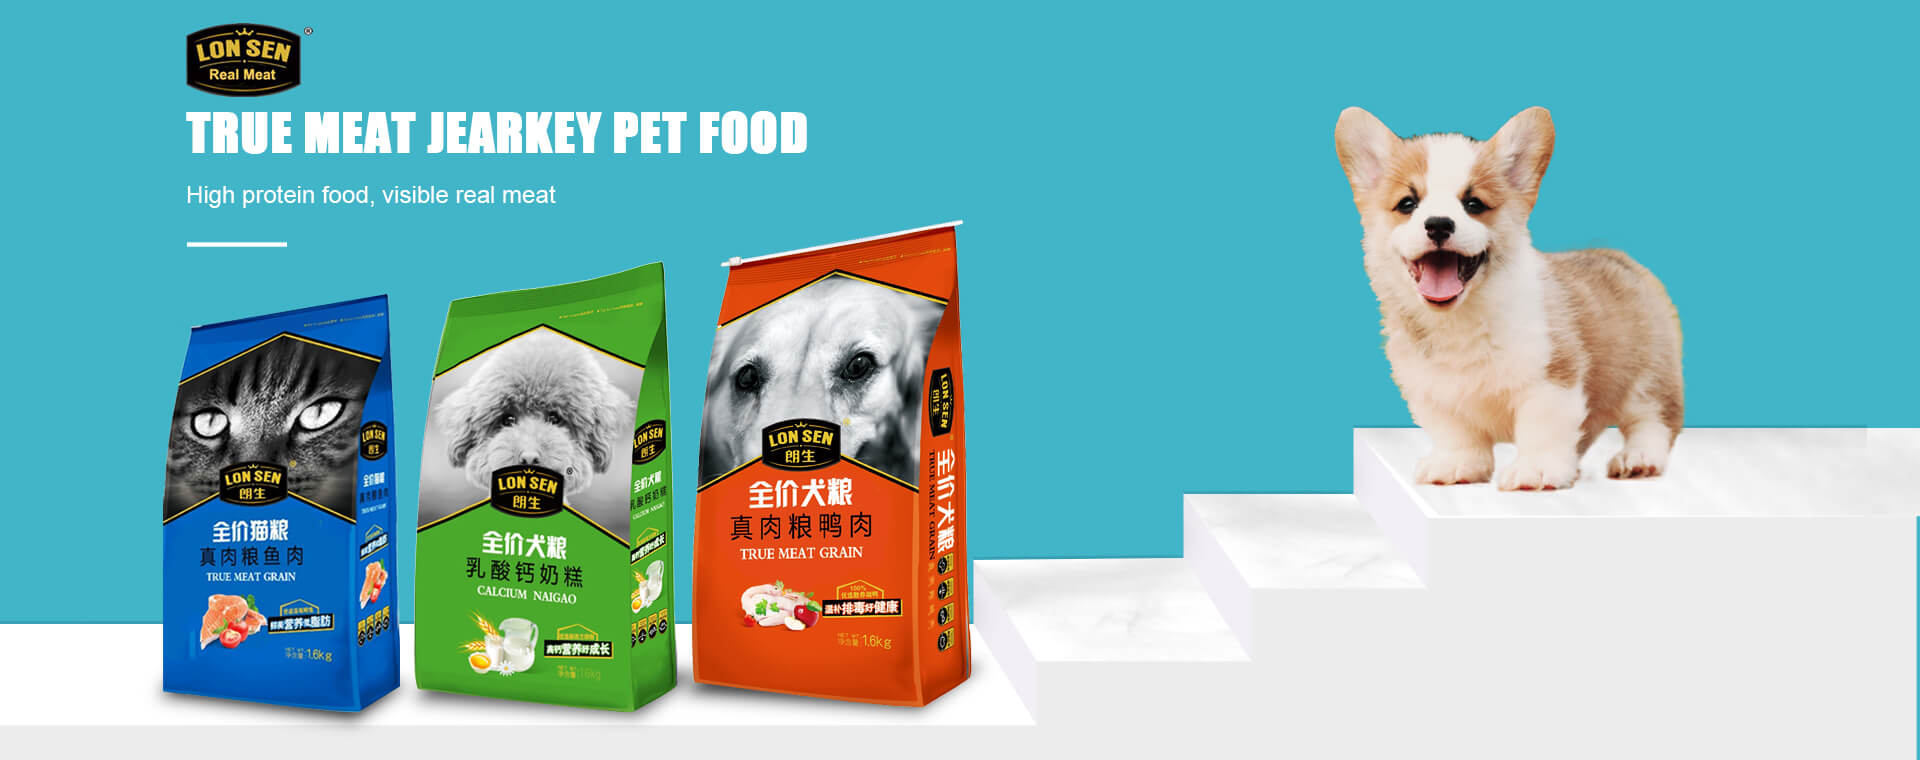 Hebei Maische Pet Food Co., Ltd.